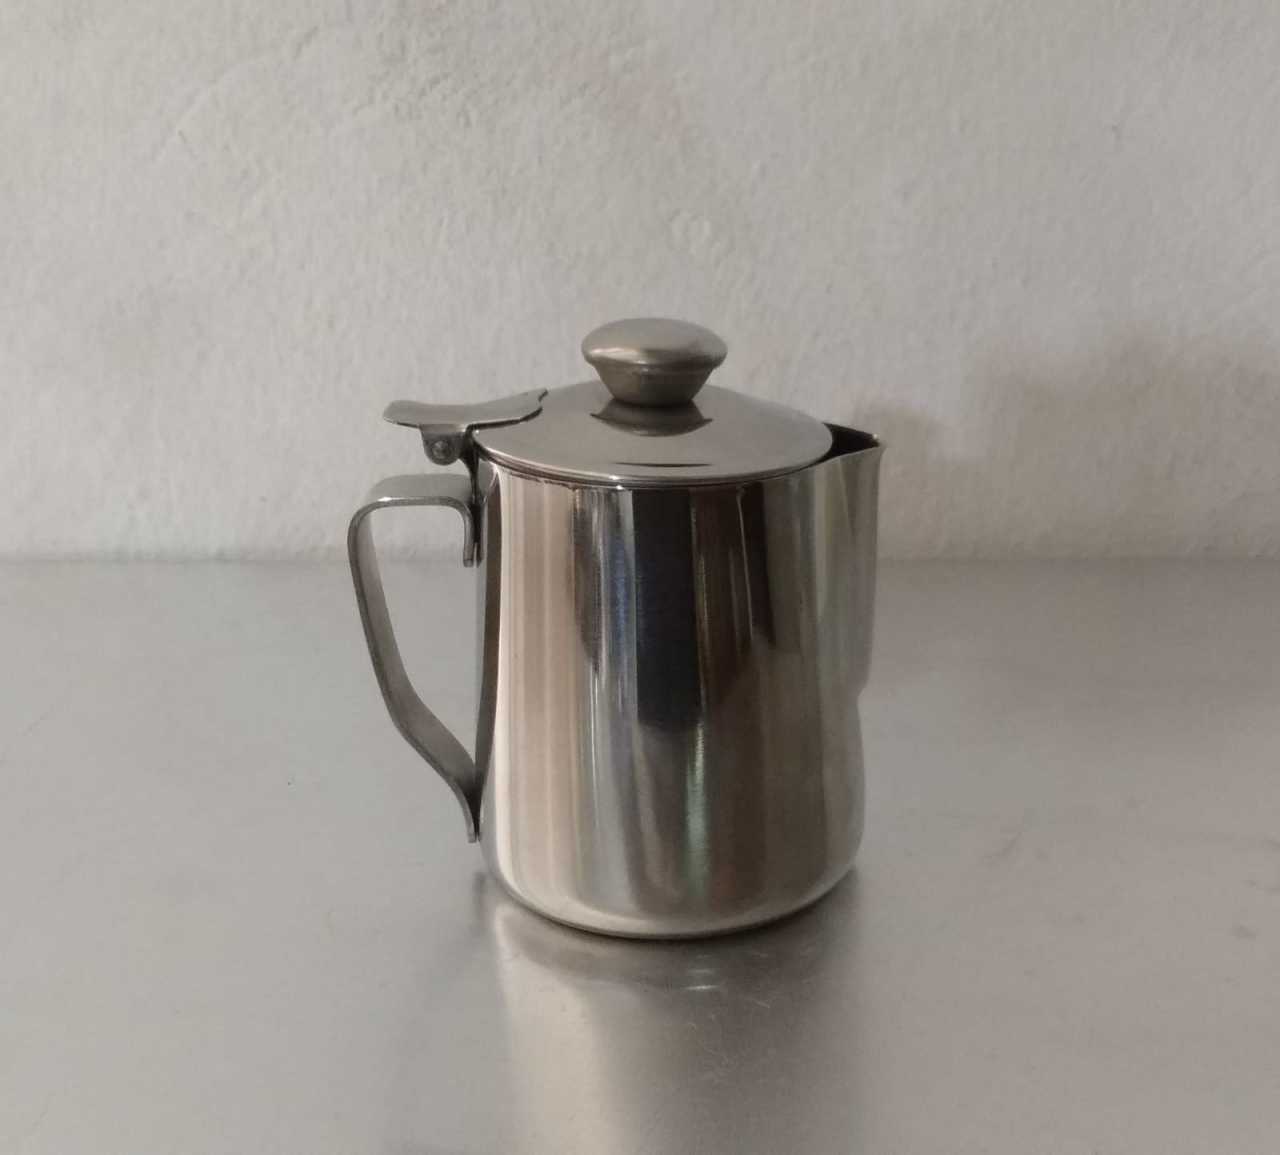 Çay Potu/Süt Potu/Kahve Potu/Pitcher 0,7 Lt. Kapaklı